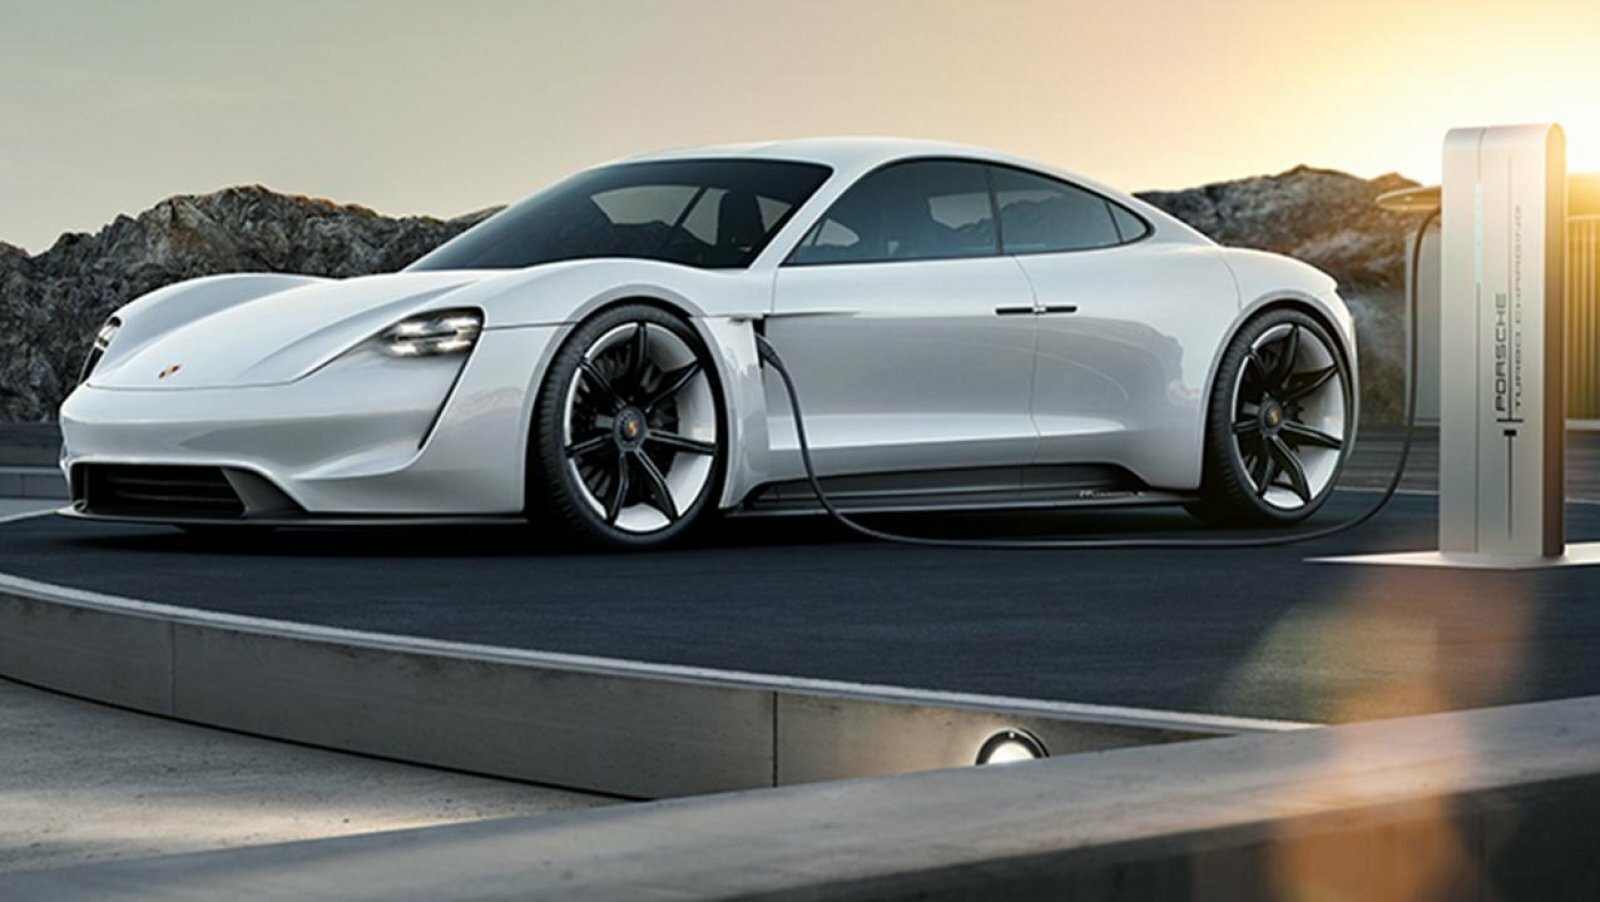 Στην πλέον πολυτελή έκδοση της, η ηλεκτρική Porsche Taycan θα στοιχίζει $130 χιλιάδες